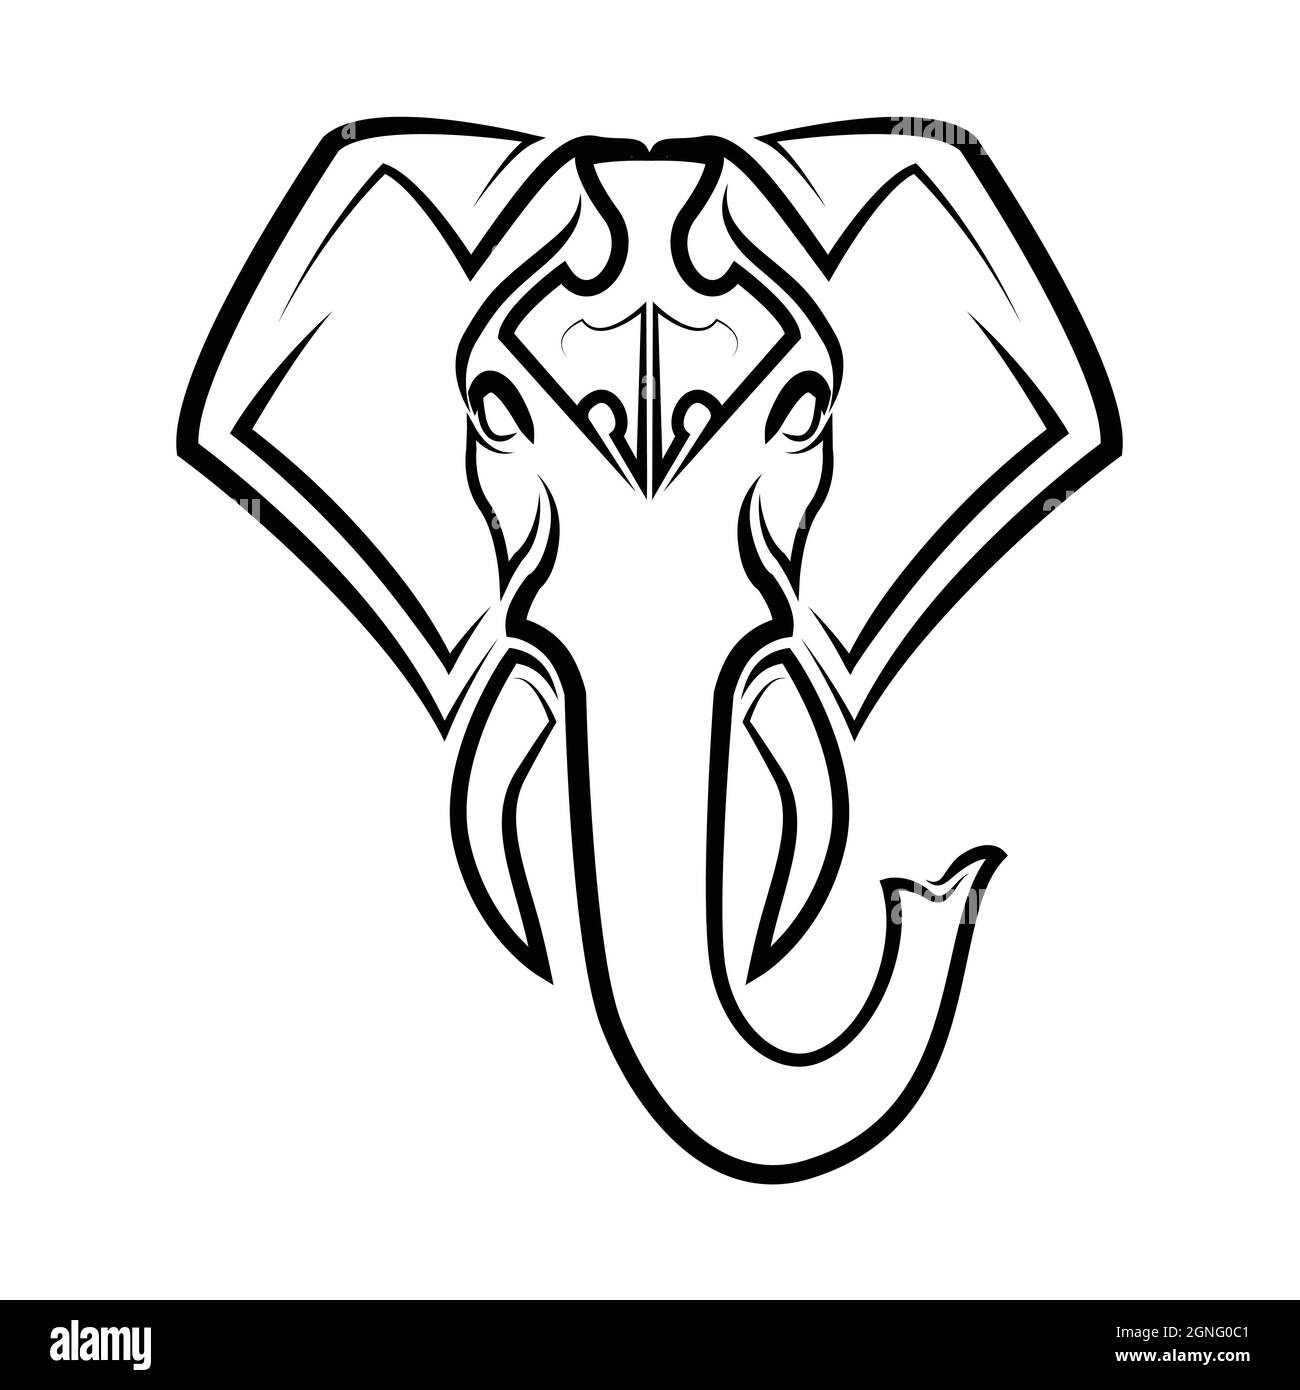 L'arte della linea bianca e nera della parte anteriore della testa dell'elefante. Buon uso per simbolo, mascotte, icona, avatar, tatuaggio, T Shirt design, logo o qualsiasi disegno Illustrazione Vettoriale